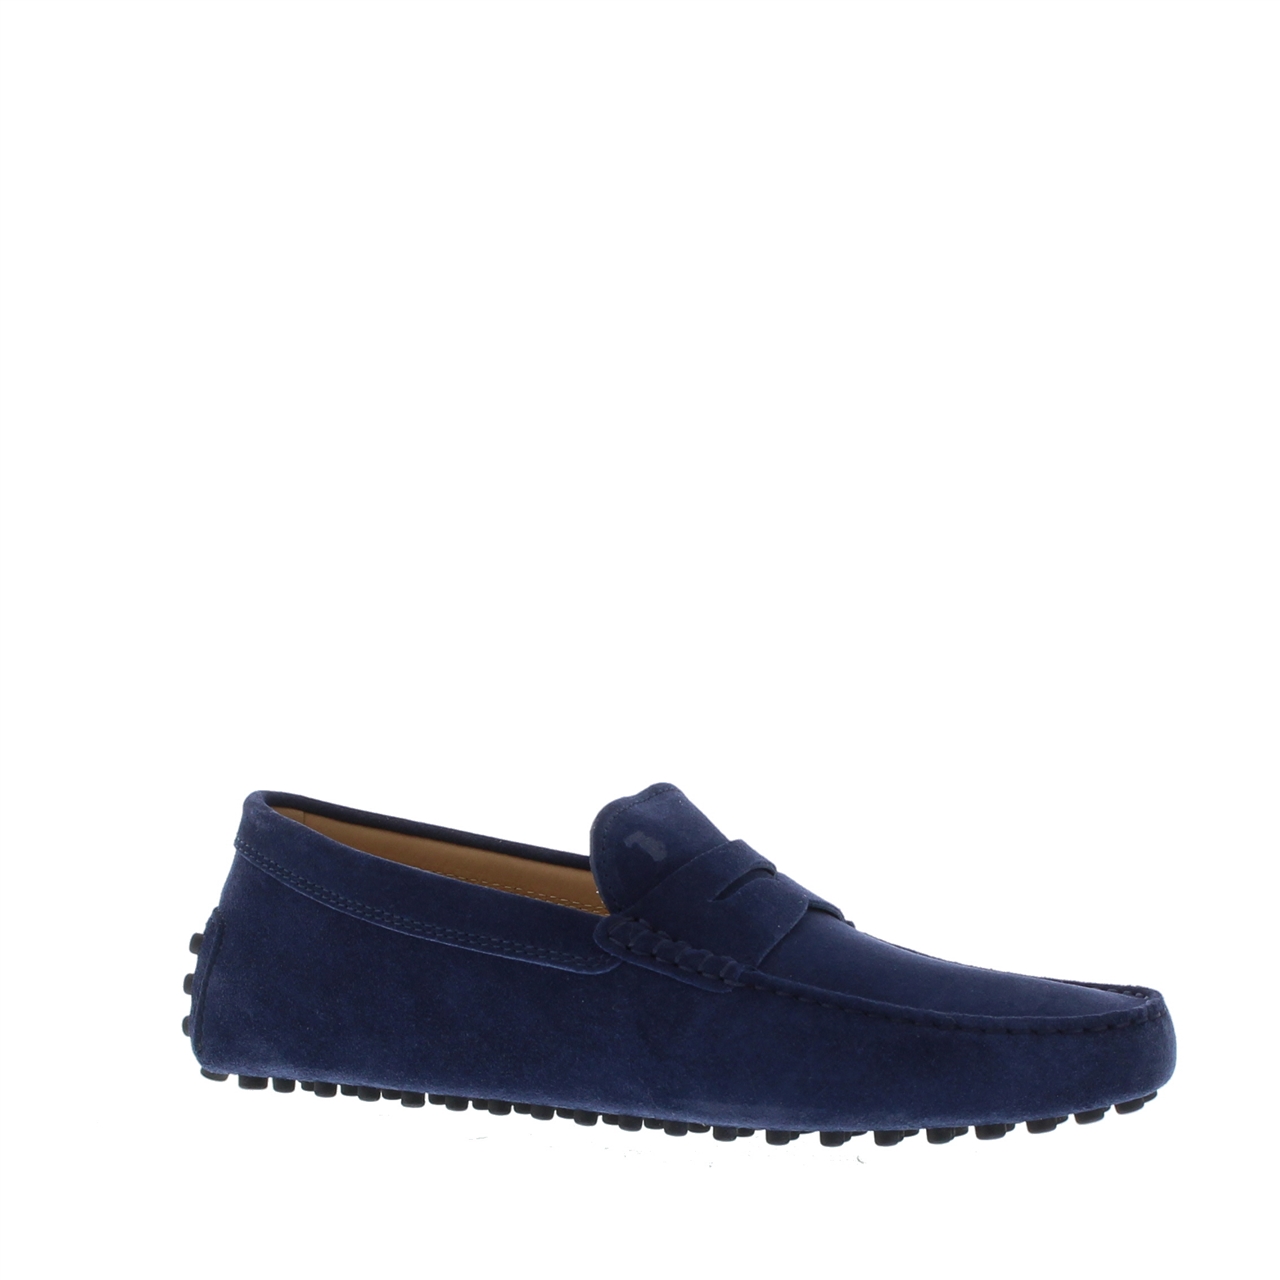 Schoenen Jongensschoenen Loafers & Instappers Handgemaakte Bright Blue Boys Suède Schoenen UK maat 3 